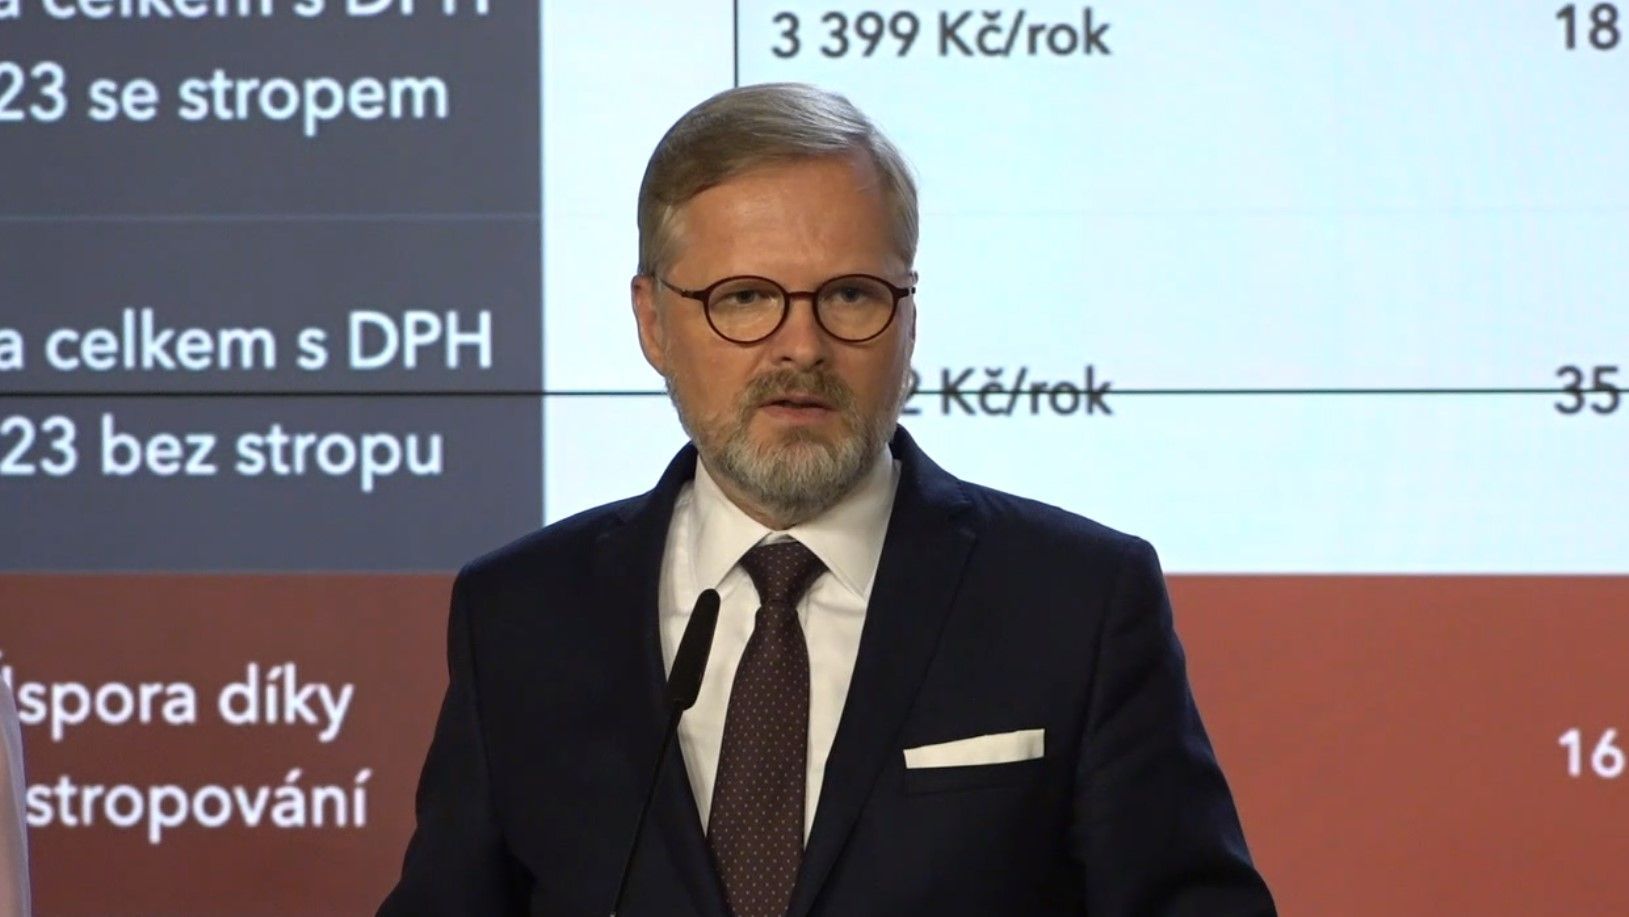 Petr Fiala, Tisková konference po jednání vlády,12.9., DVTV úvodní fotka